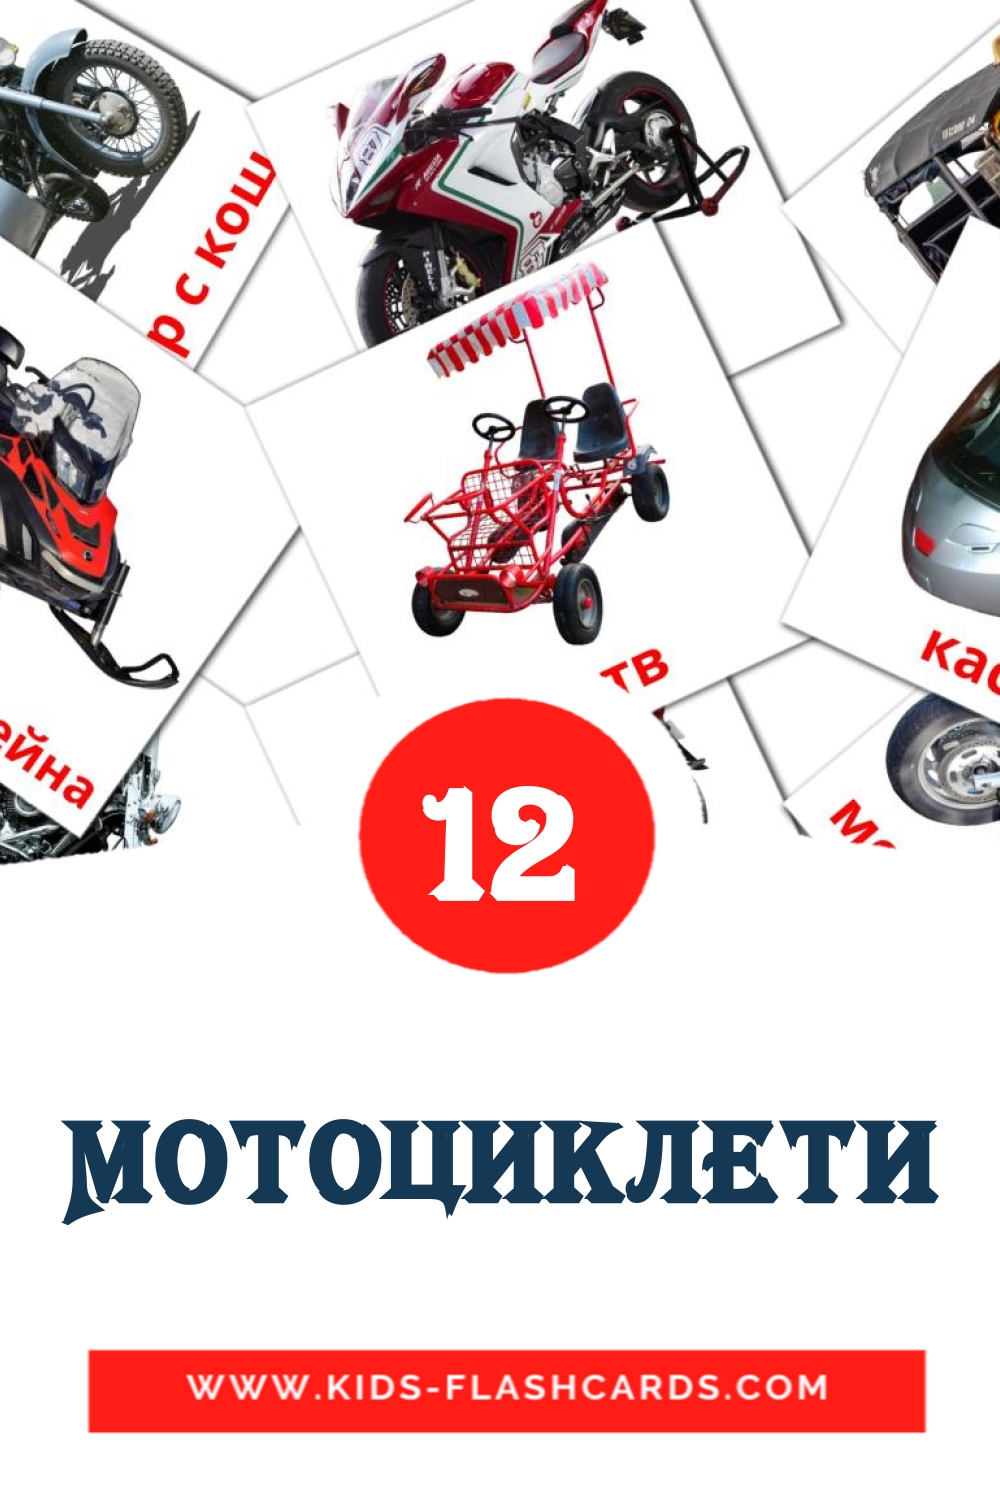 Мотоциклети на болгарском для Детского Сада (14 карточек)